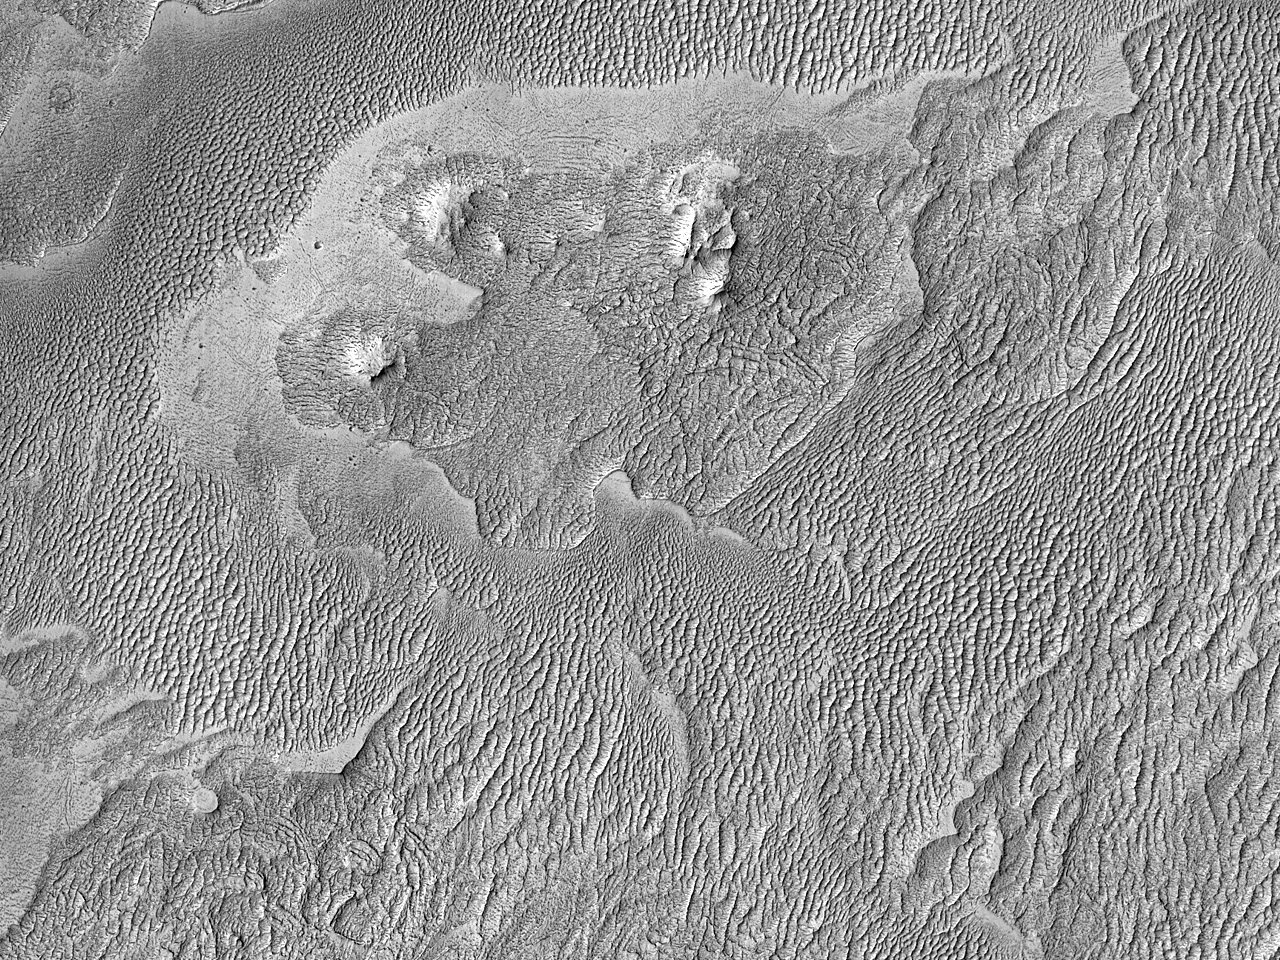 Layers Northwest Schiaparelli Crater